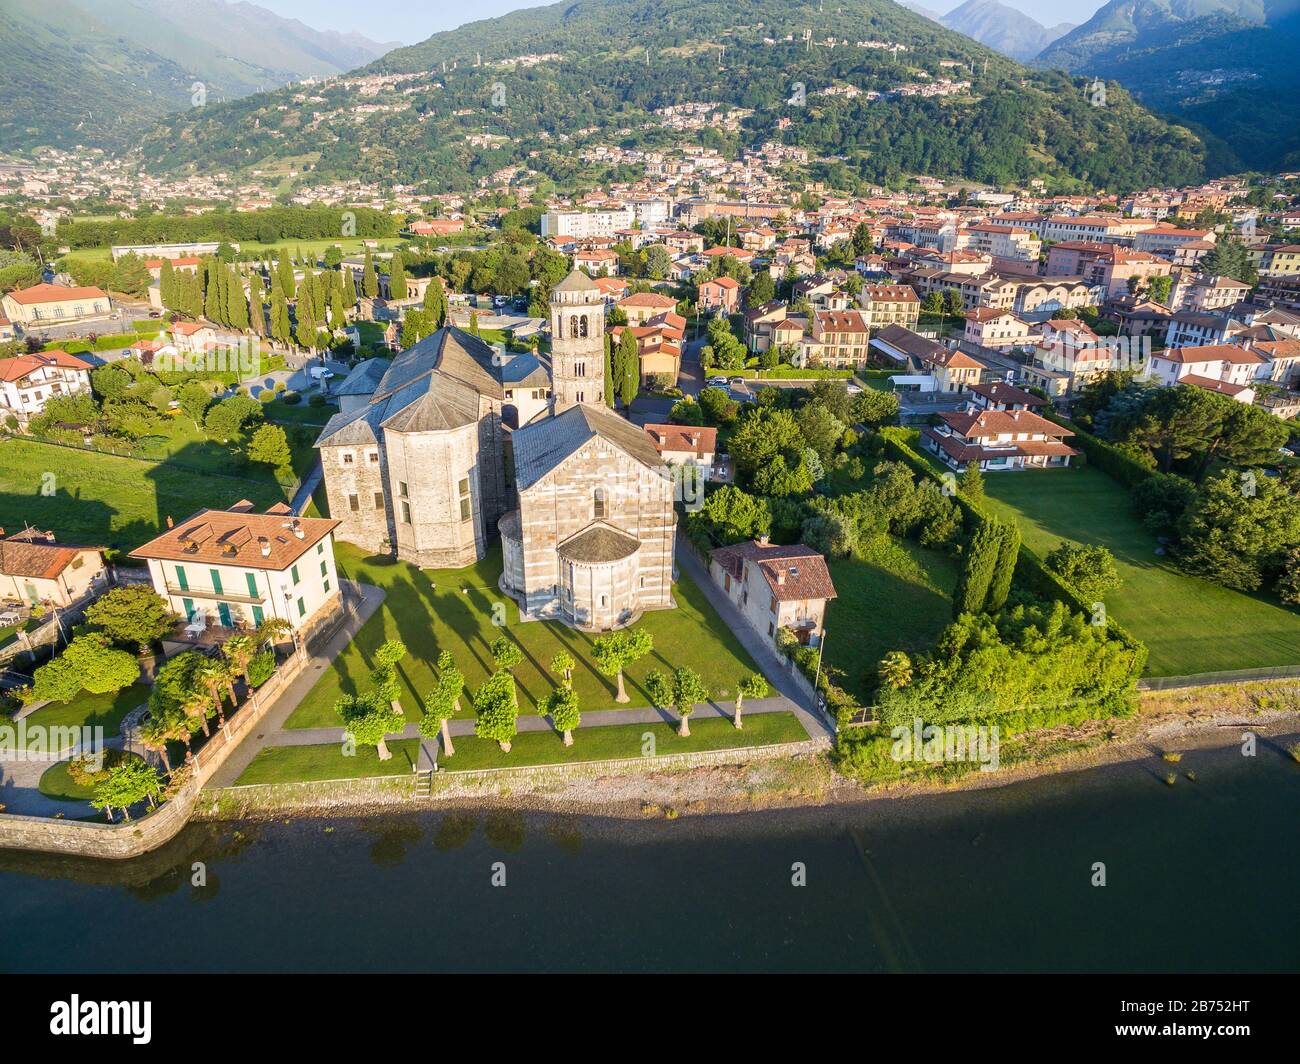 Gravedona - Lac de Côme - Italie - Église de S. Maria del Tiglio (XII siècle) - vue aérienne Banque D'Images